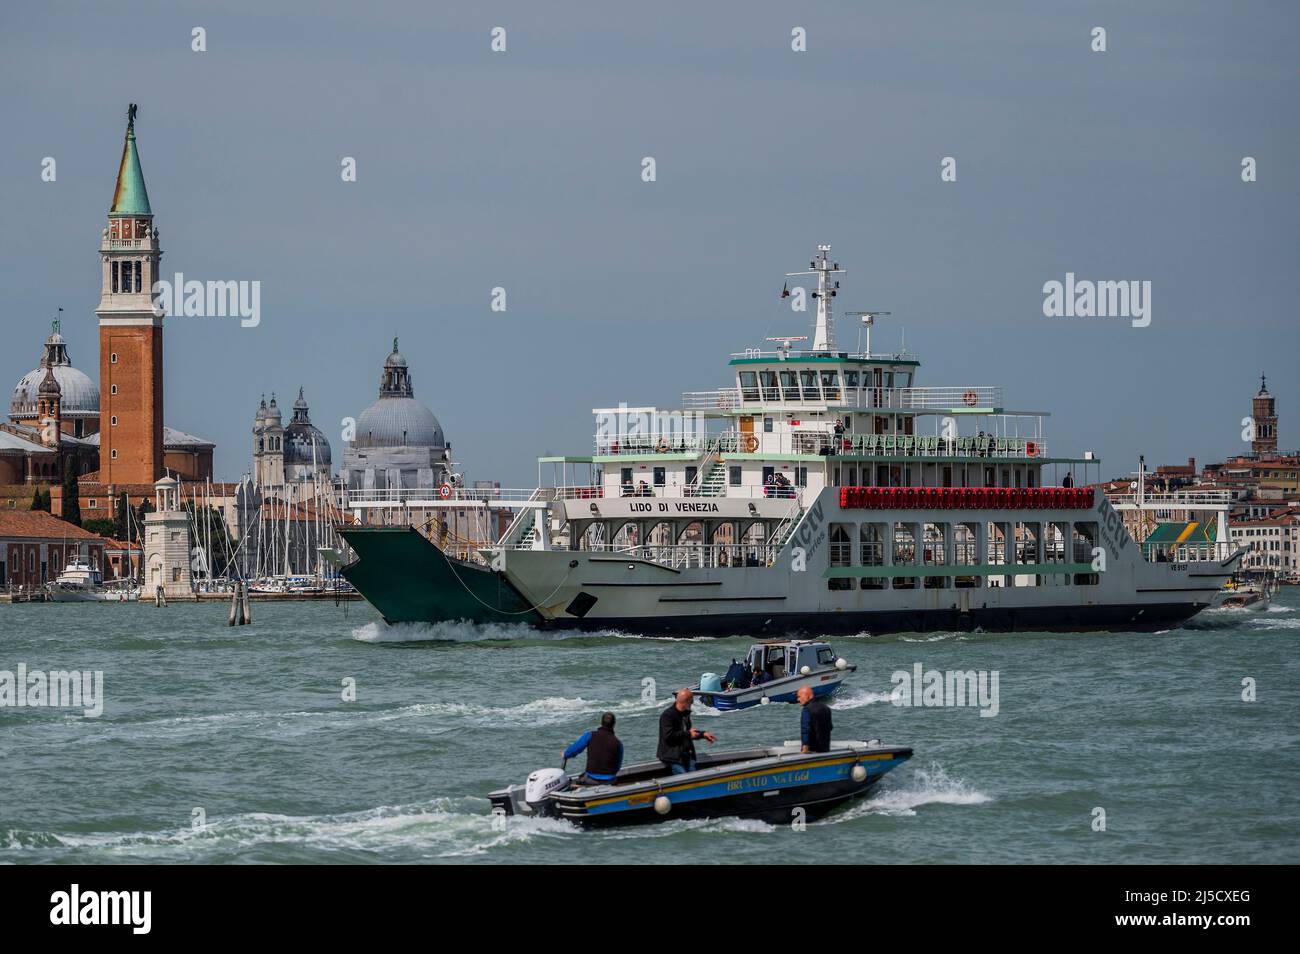 Un véhicule ferry sur la Canale di San Marco en face de l'église de San Giorgio Maggiore sur la Canale di San Marco - les canaux sont les principales artères portant toutes les formes de transport d'eau - Venise au début de la Biennale di Venezia en 2022. Banque D'Images